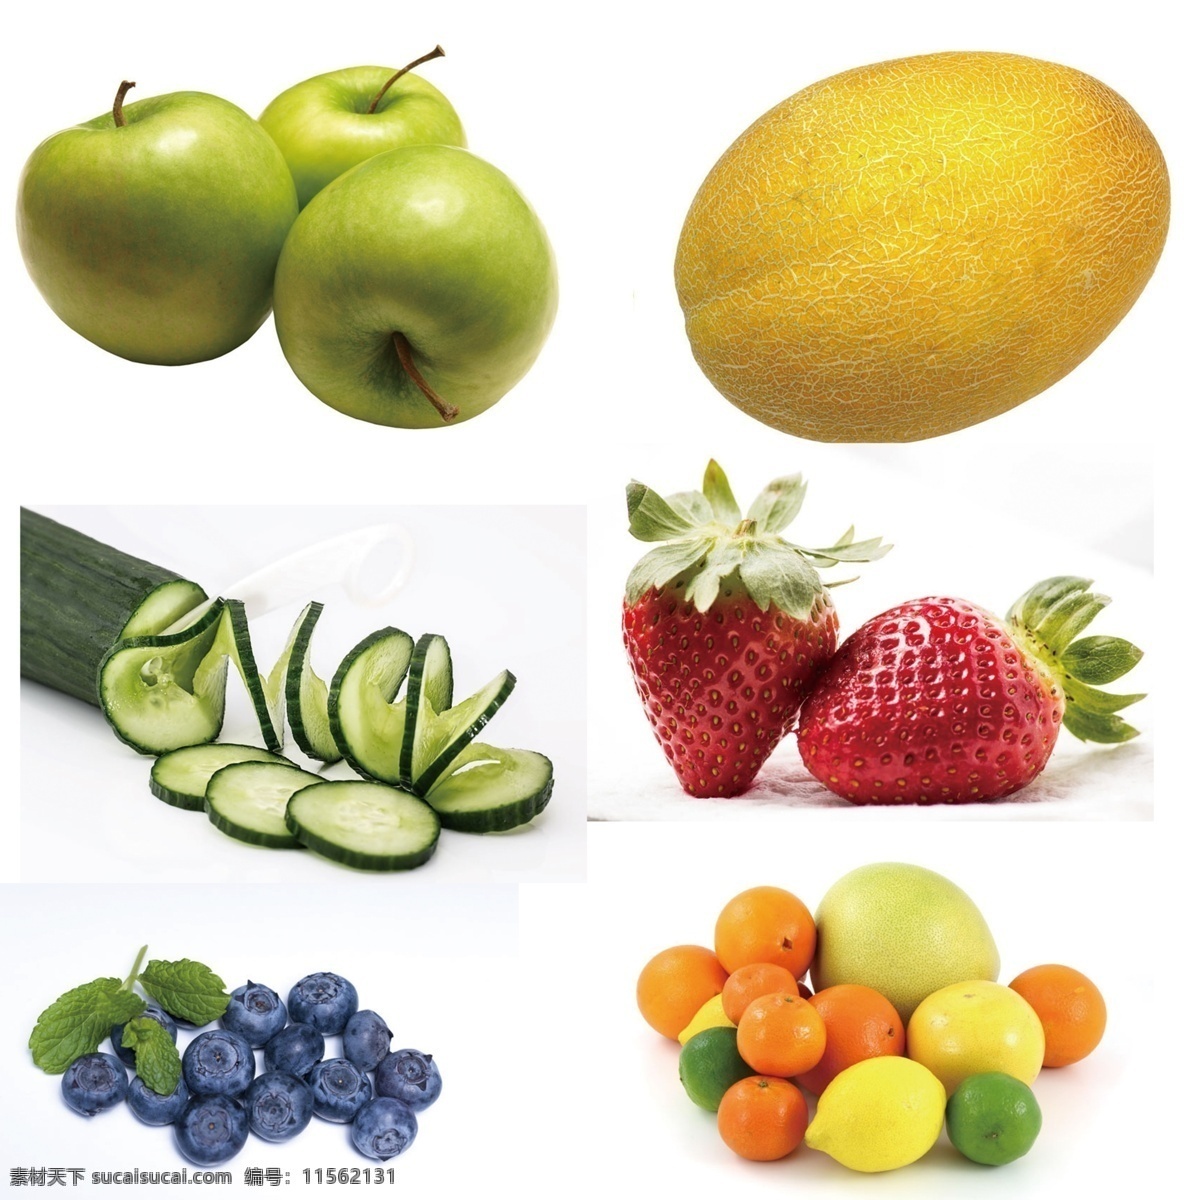 水果素材 水果 黄瓜 青苹果 蓝莓 草莓 哈密瓜 生活百科 餐饮美食